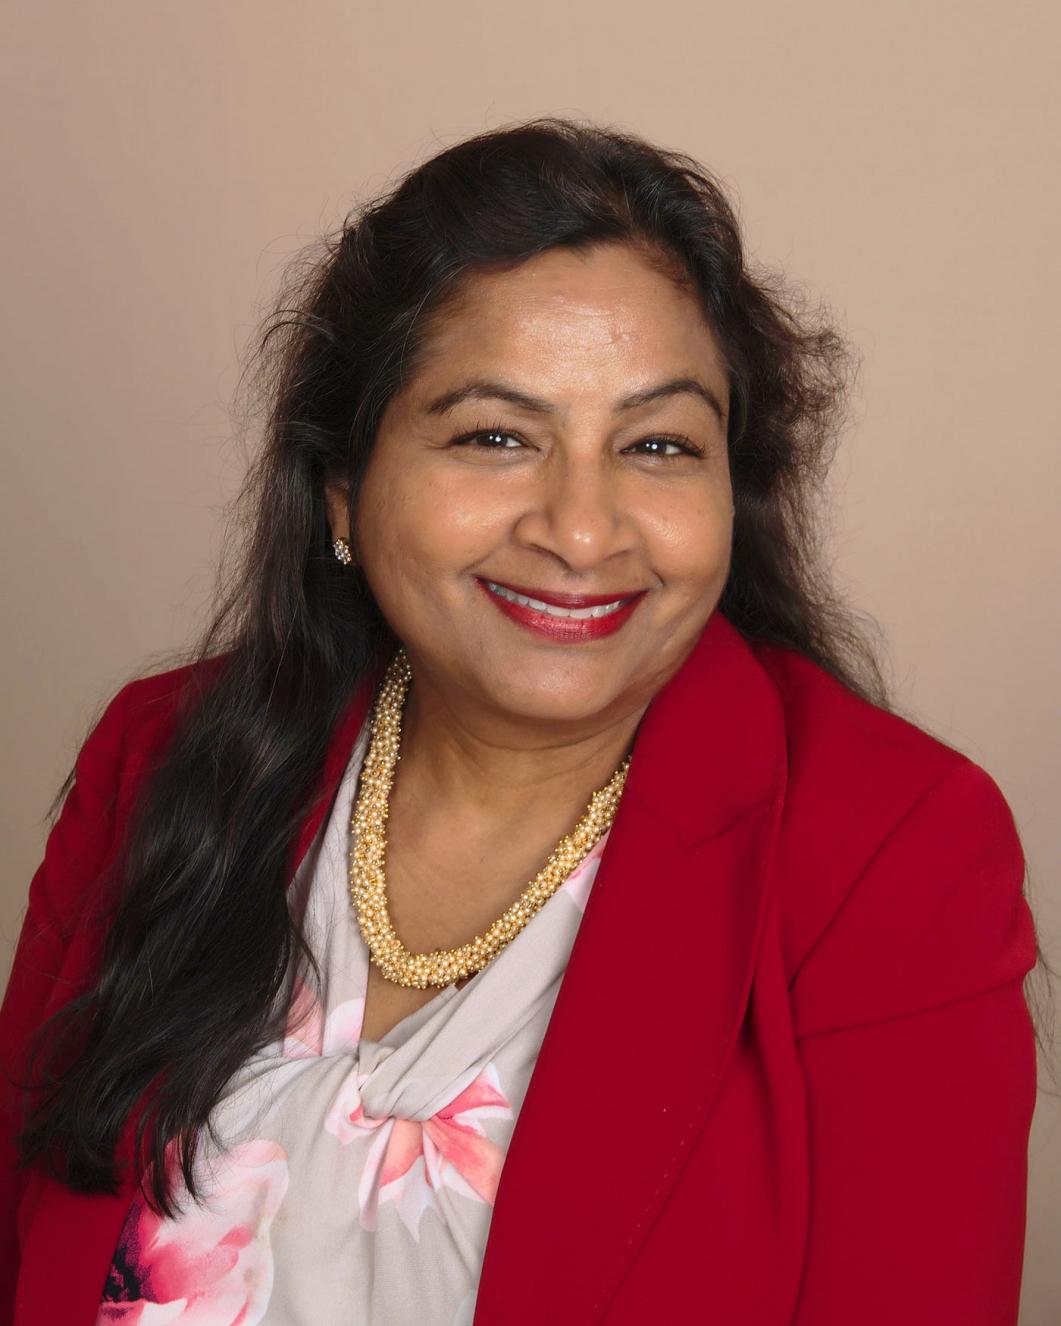 Demystifying LGBTQ - Conversation With Geetha Sreedhar